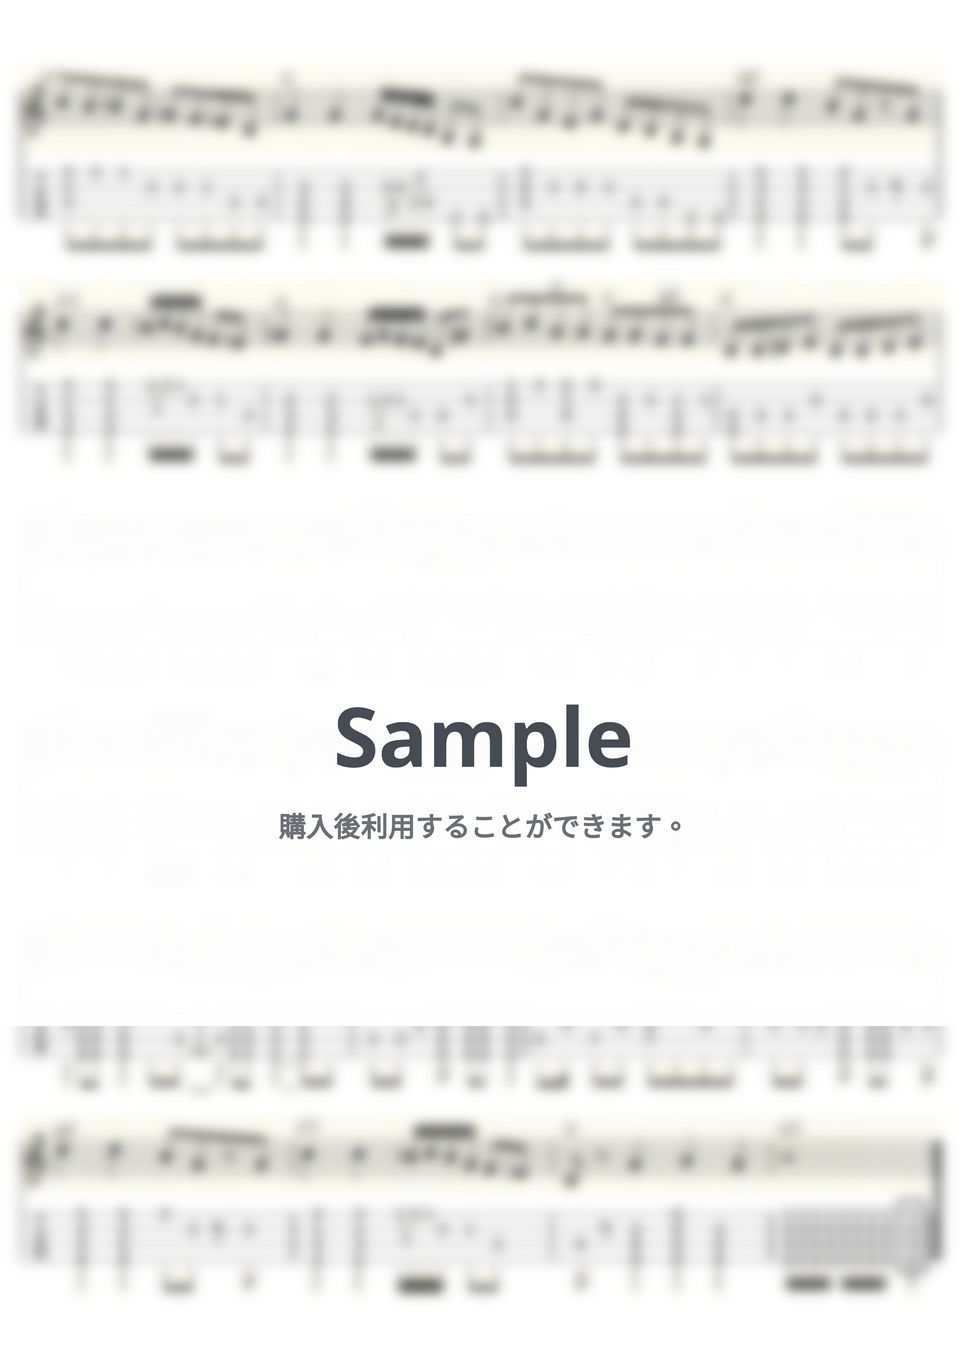 ヘンリー・マンシーニ - Baby Elephant Walk (ｳｸﾚﾚｿﾛ/Low-G/中級) by ukulelepapa